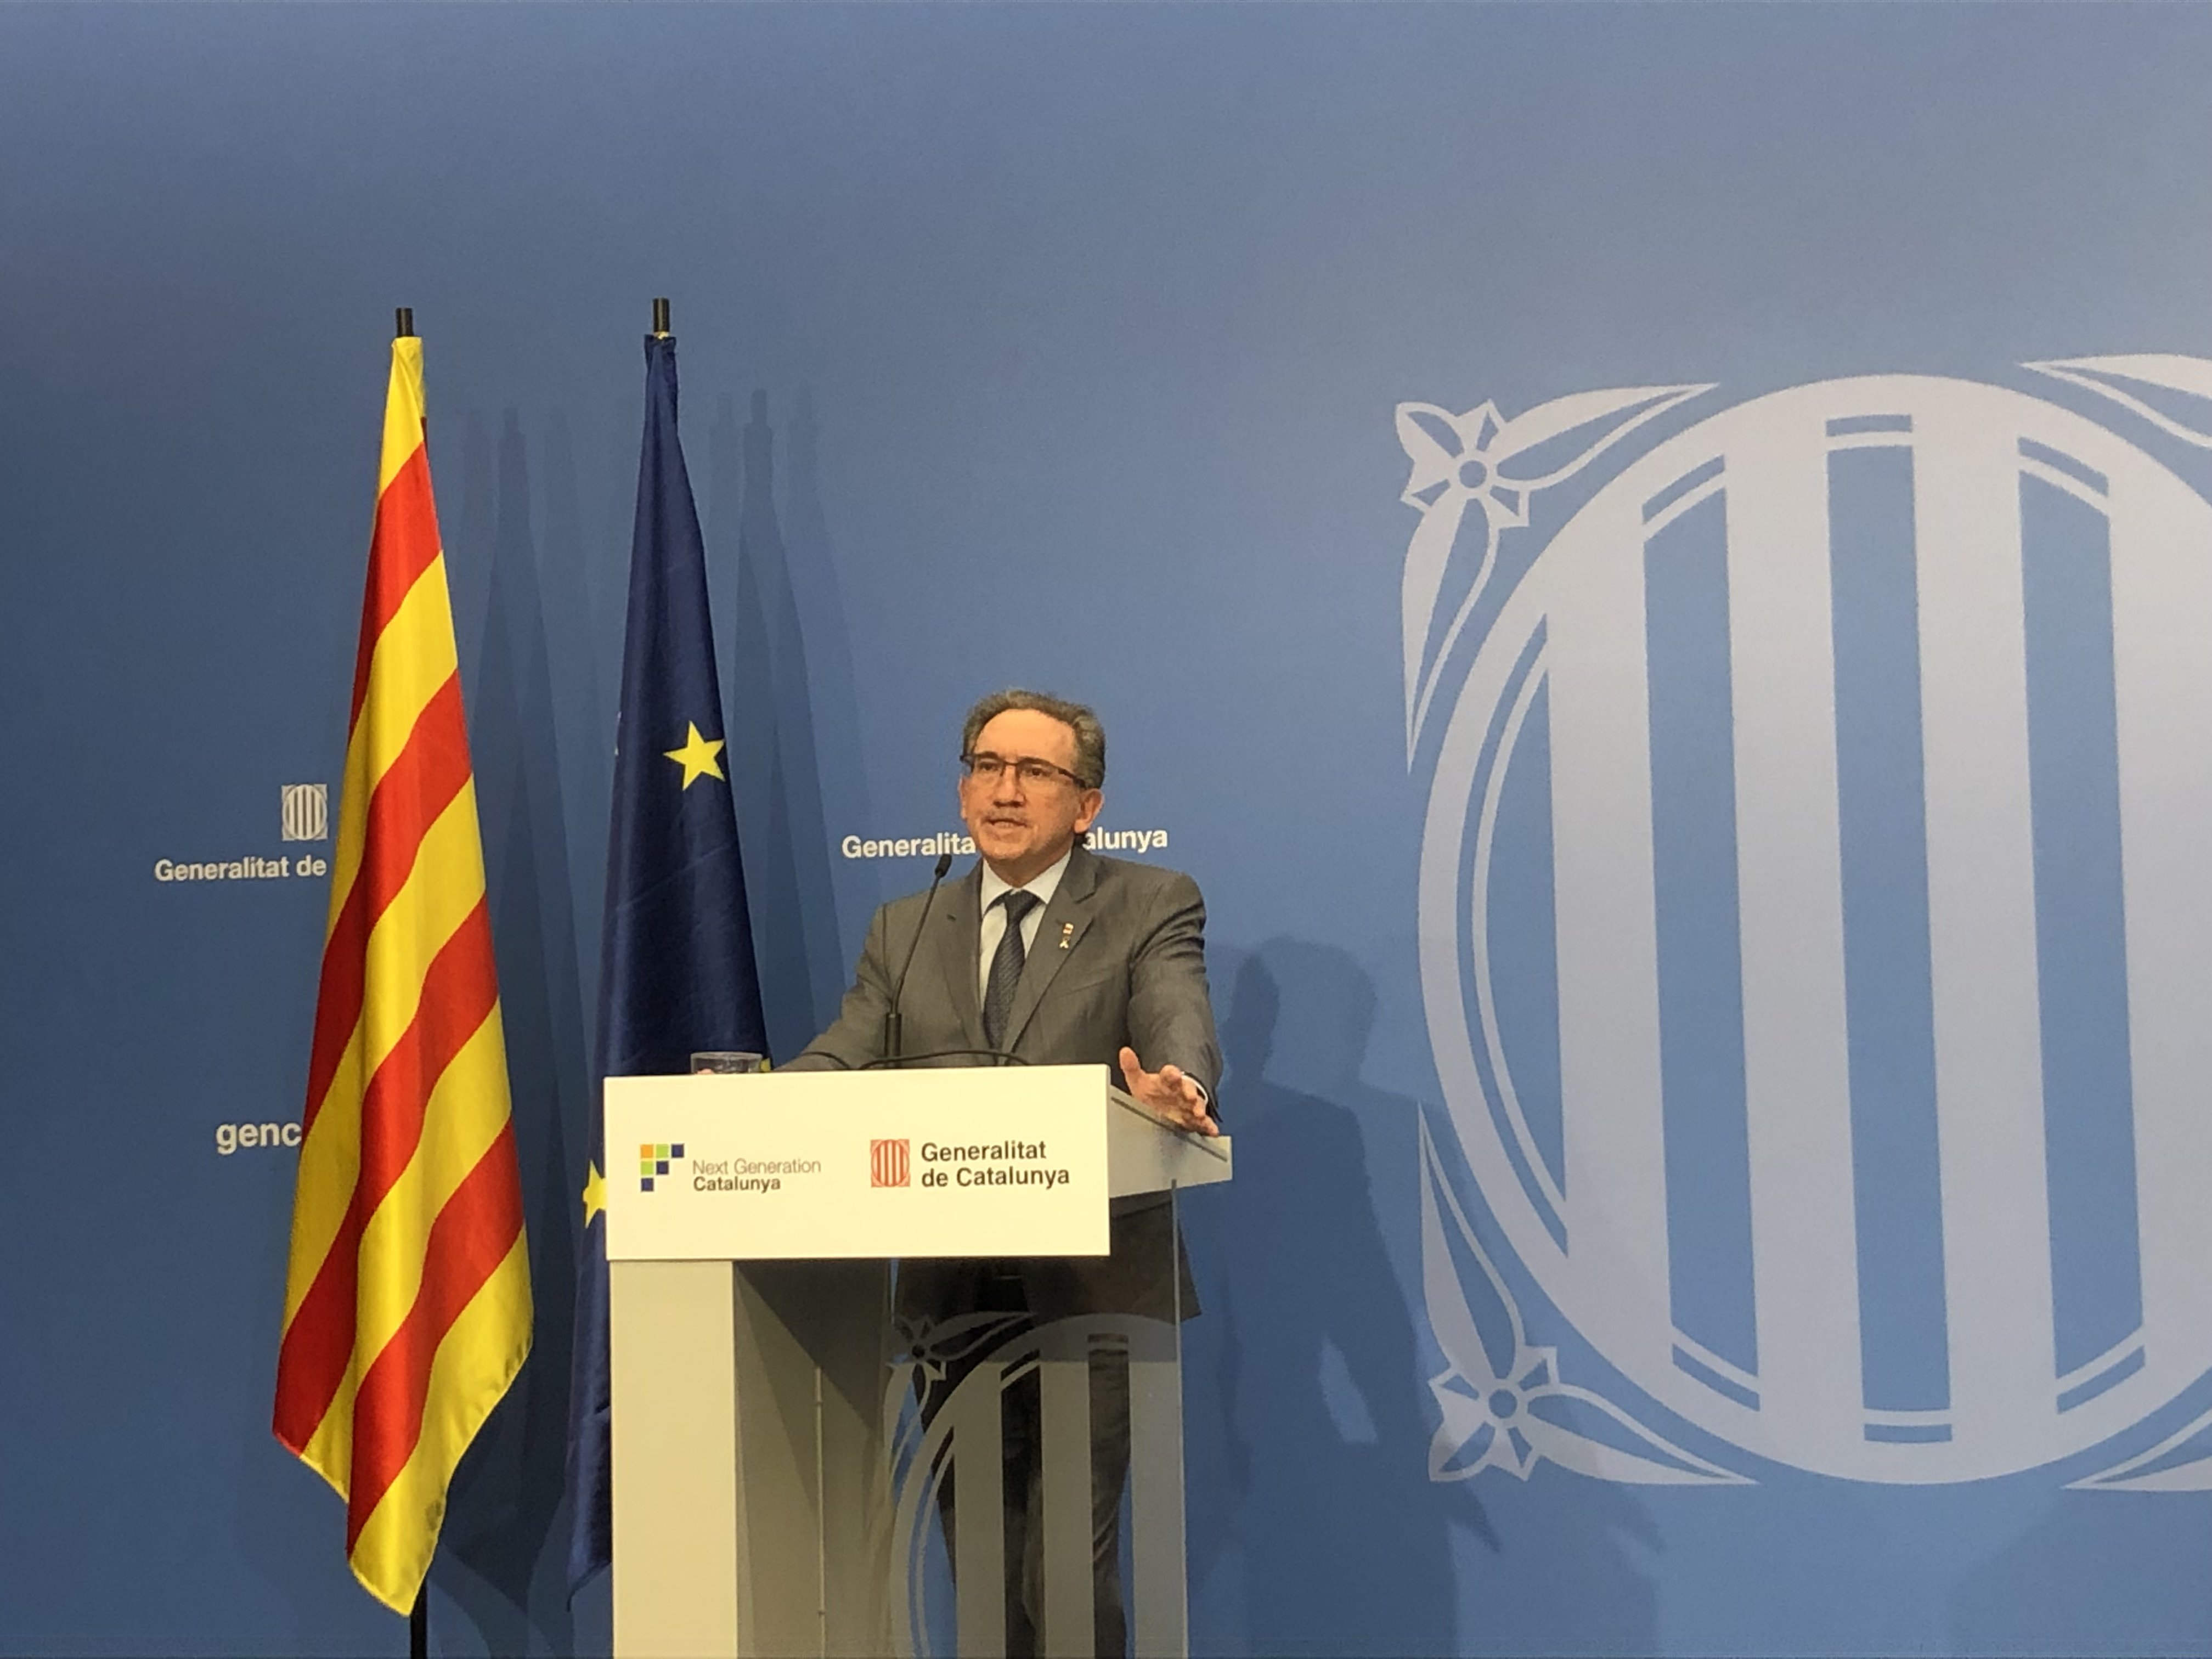 Giró calcula que els Next Generation poden incrementar el PIB català en 5 punts